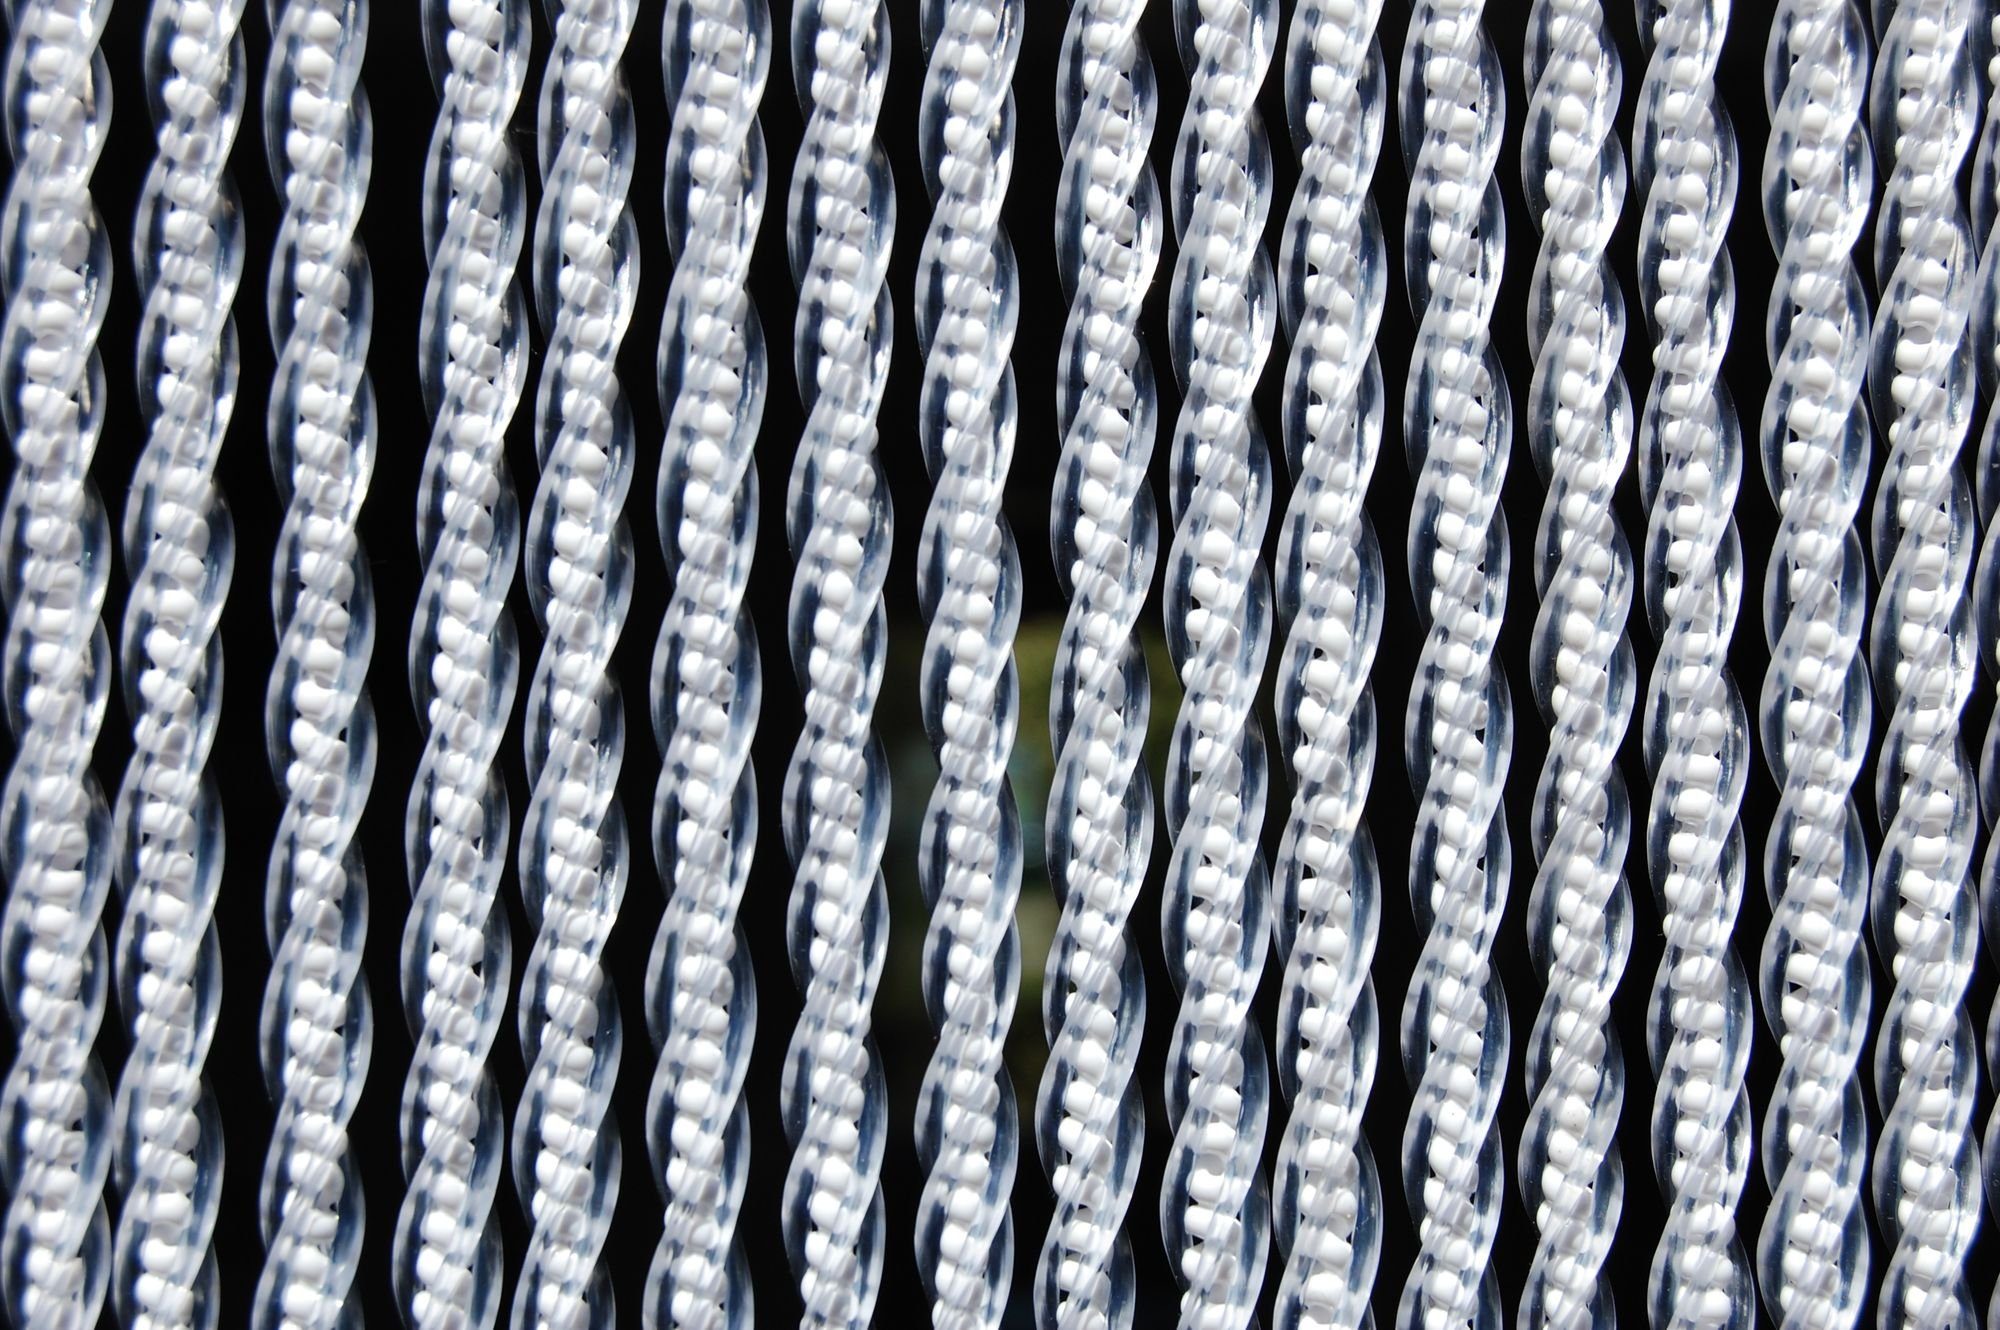 La Tenda Insektenschutz-Vorhang La Tenda CORTONA 2 Streifenvorhang weiß, 90 x 210 cm, PVC - Länge und Breite individuell kürzbar